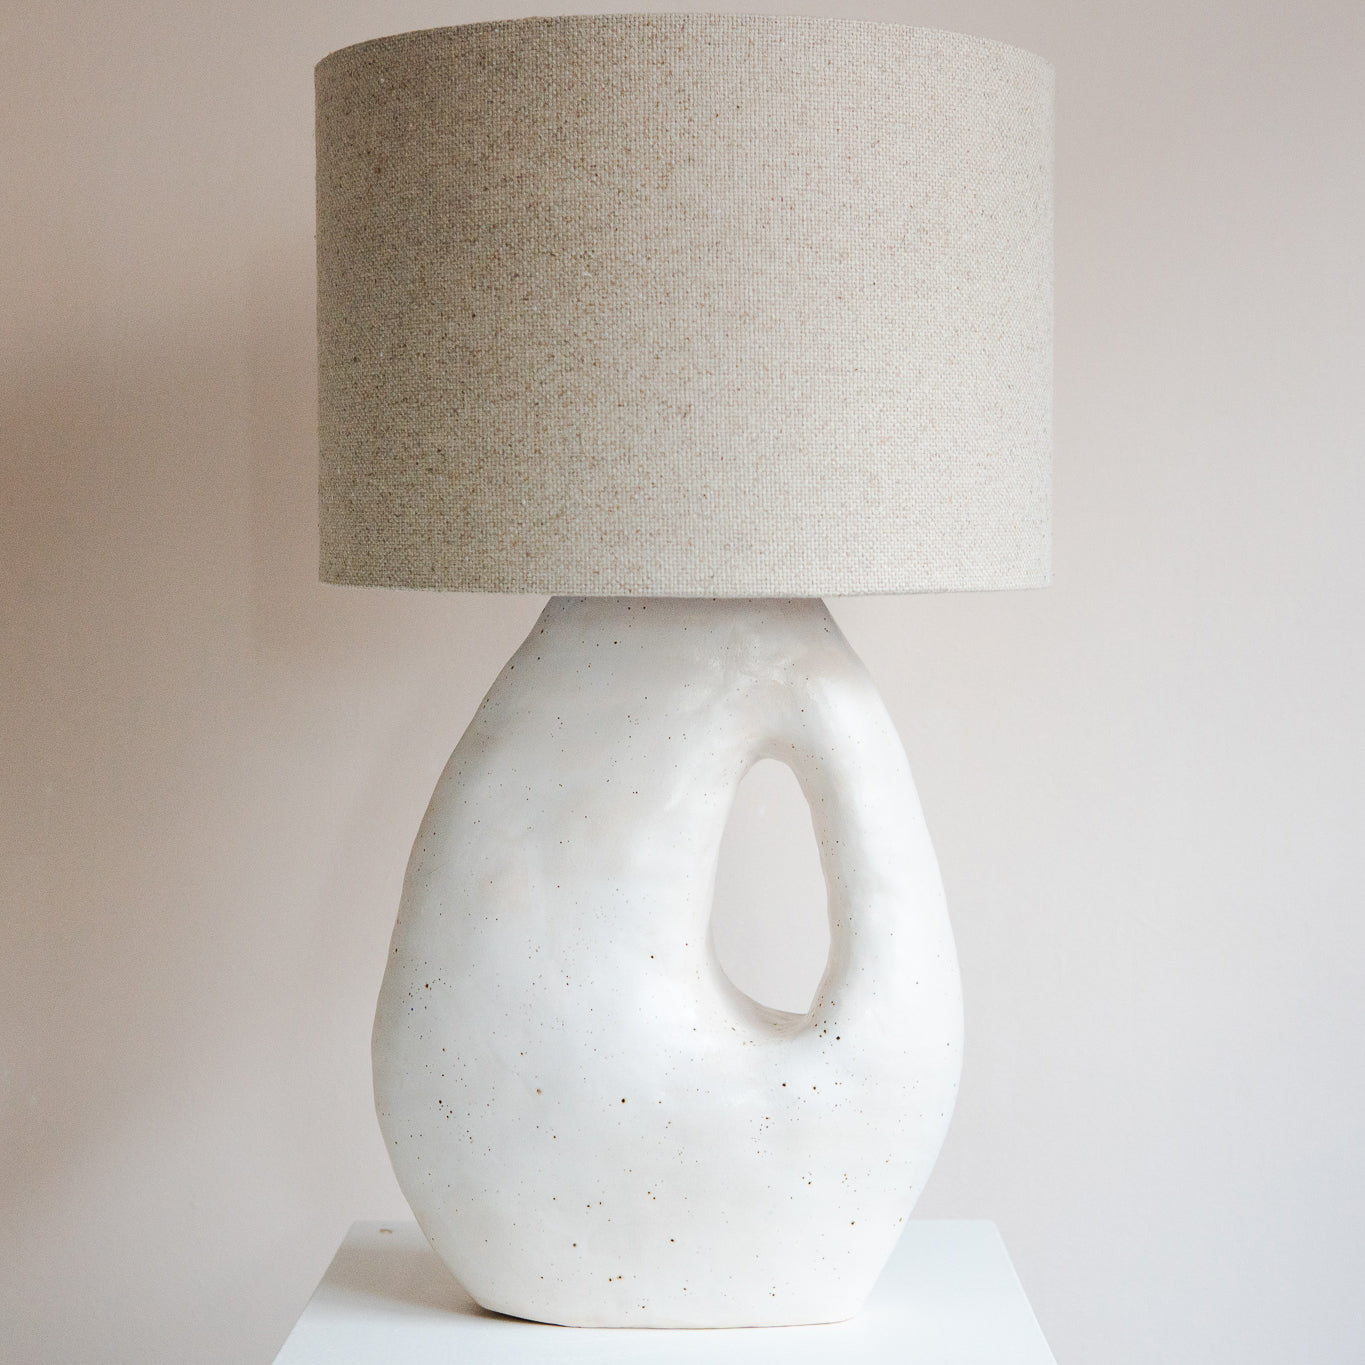 Handmade speckled ceramic lamp atelier van schaijck white